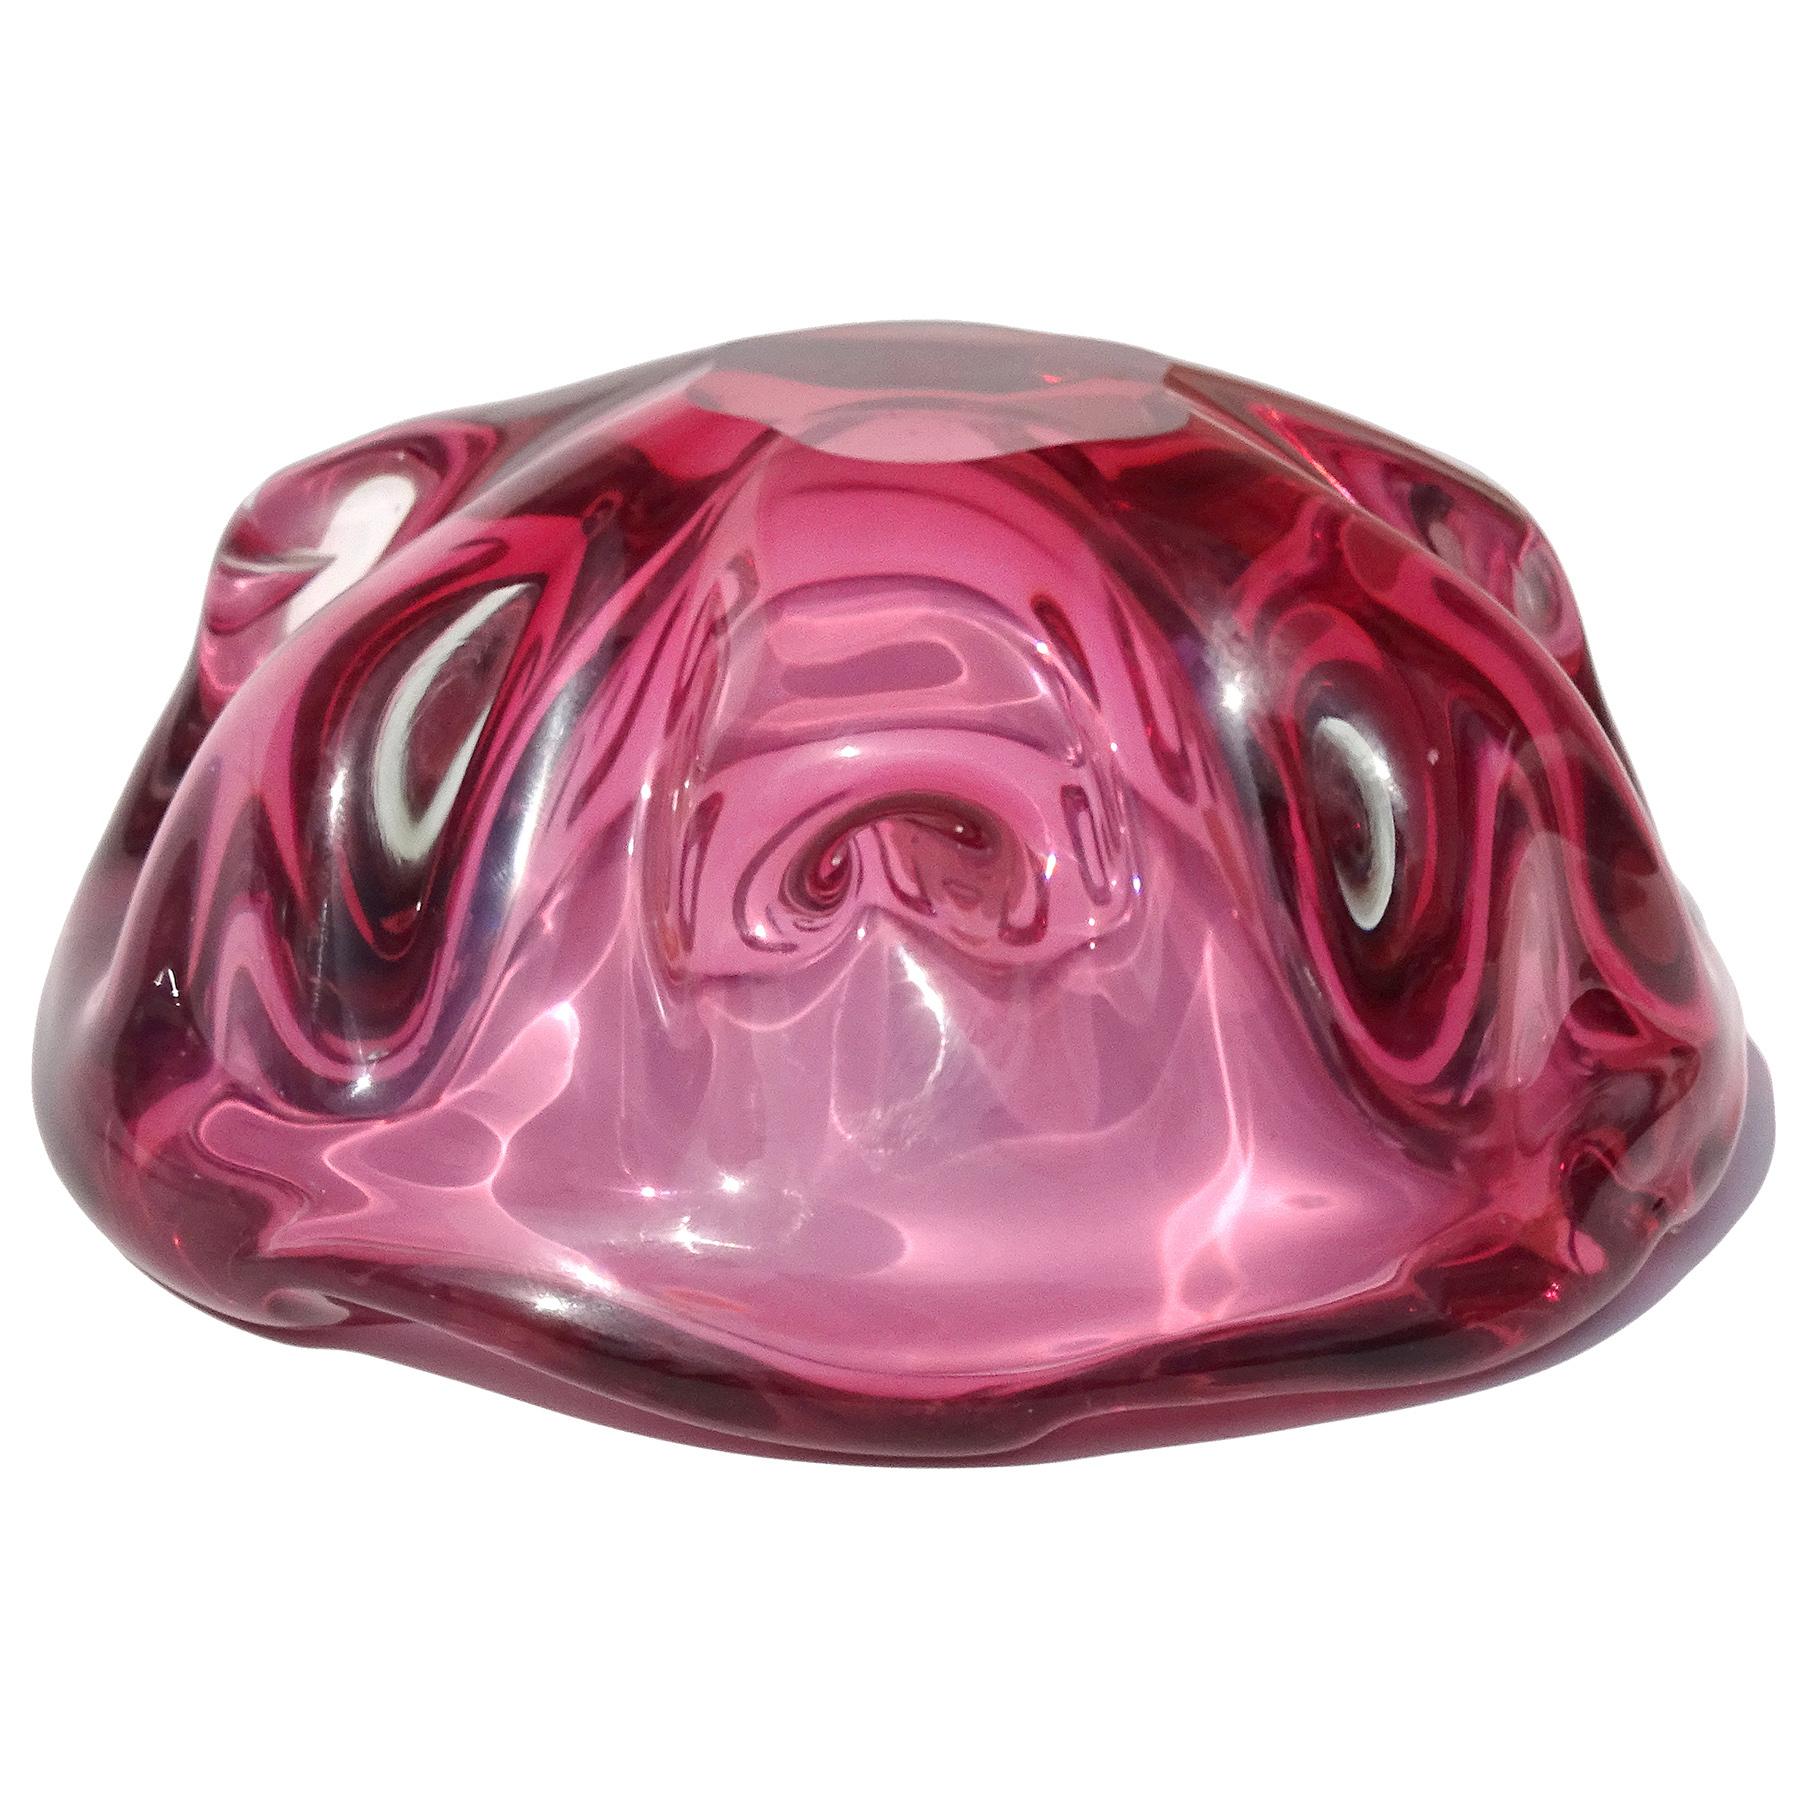 Barbini Murano Label Sommerso Pink Italian Art Glass Decorative Bowl Ashtray For Sale 1